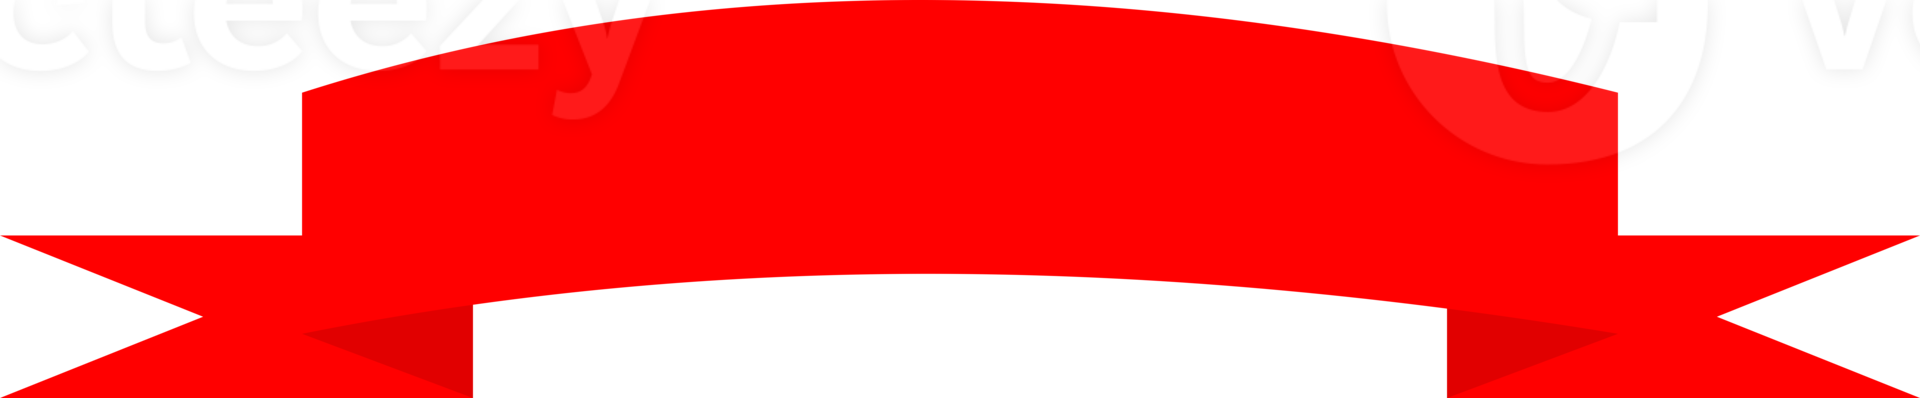 rött band banner png